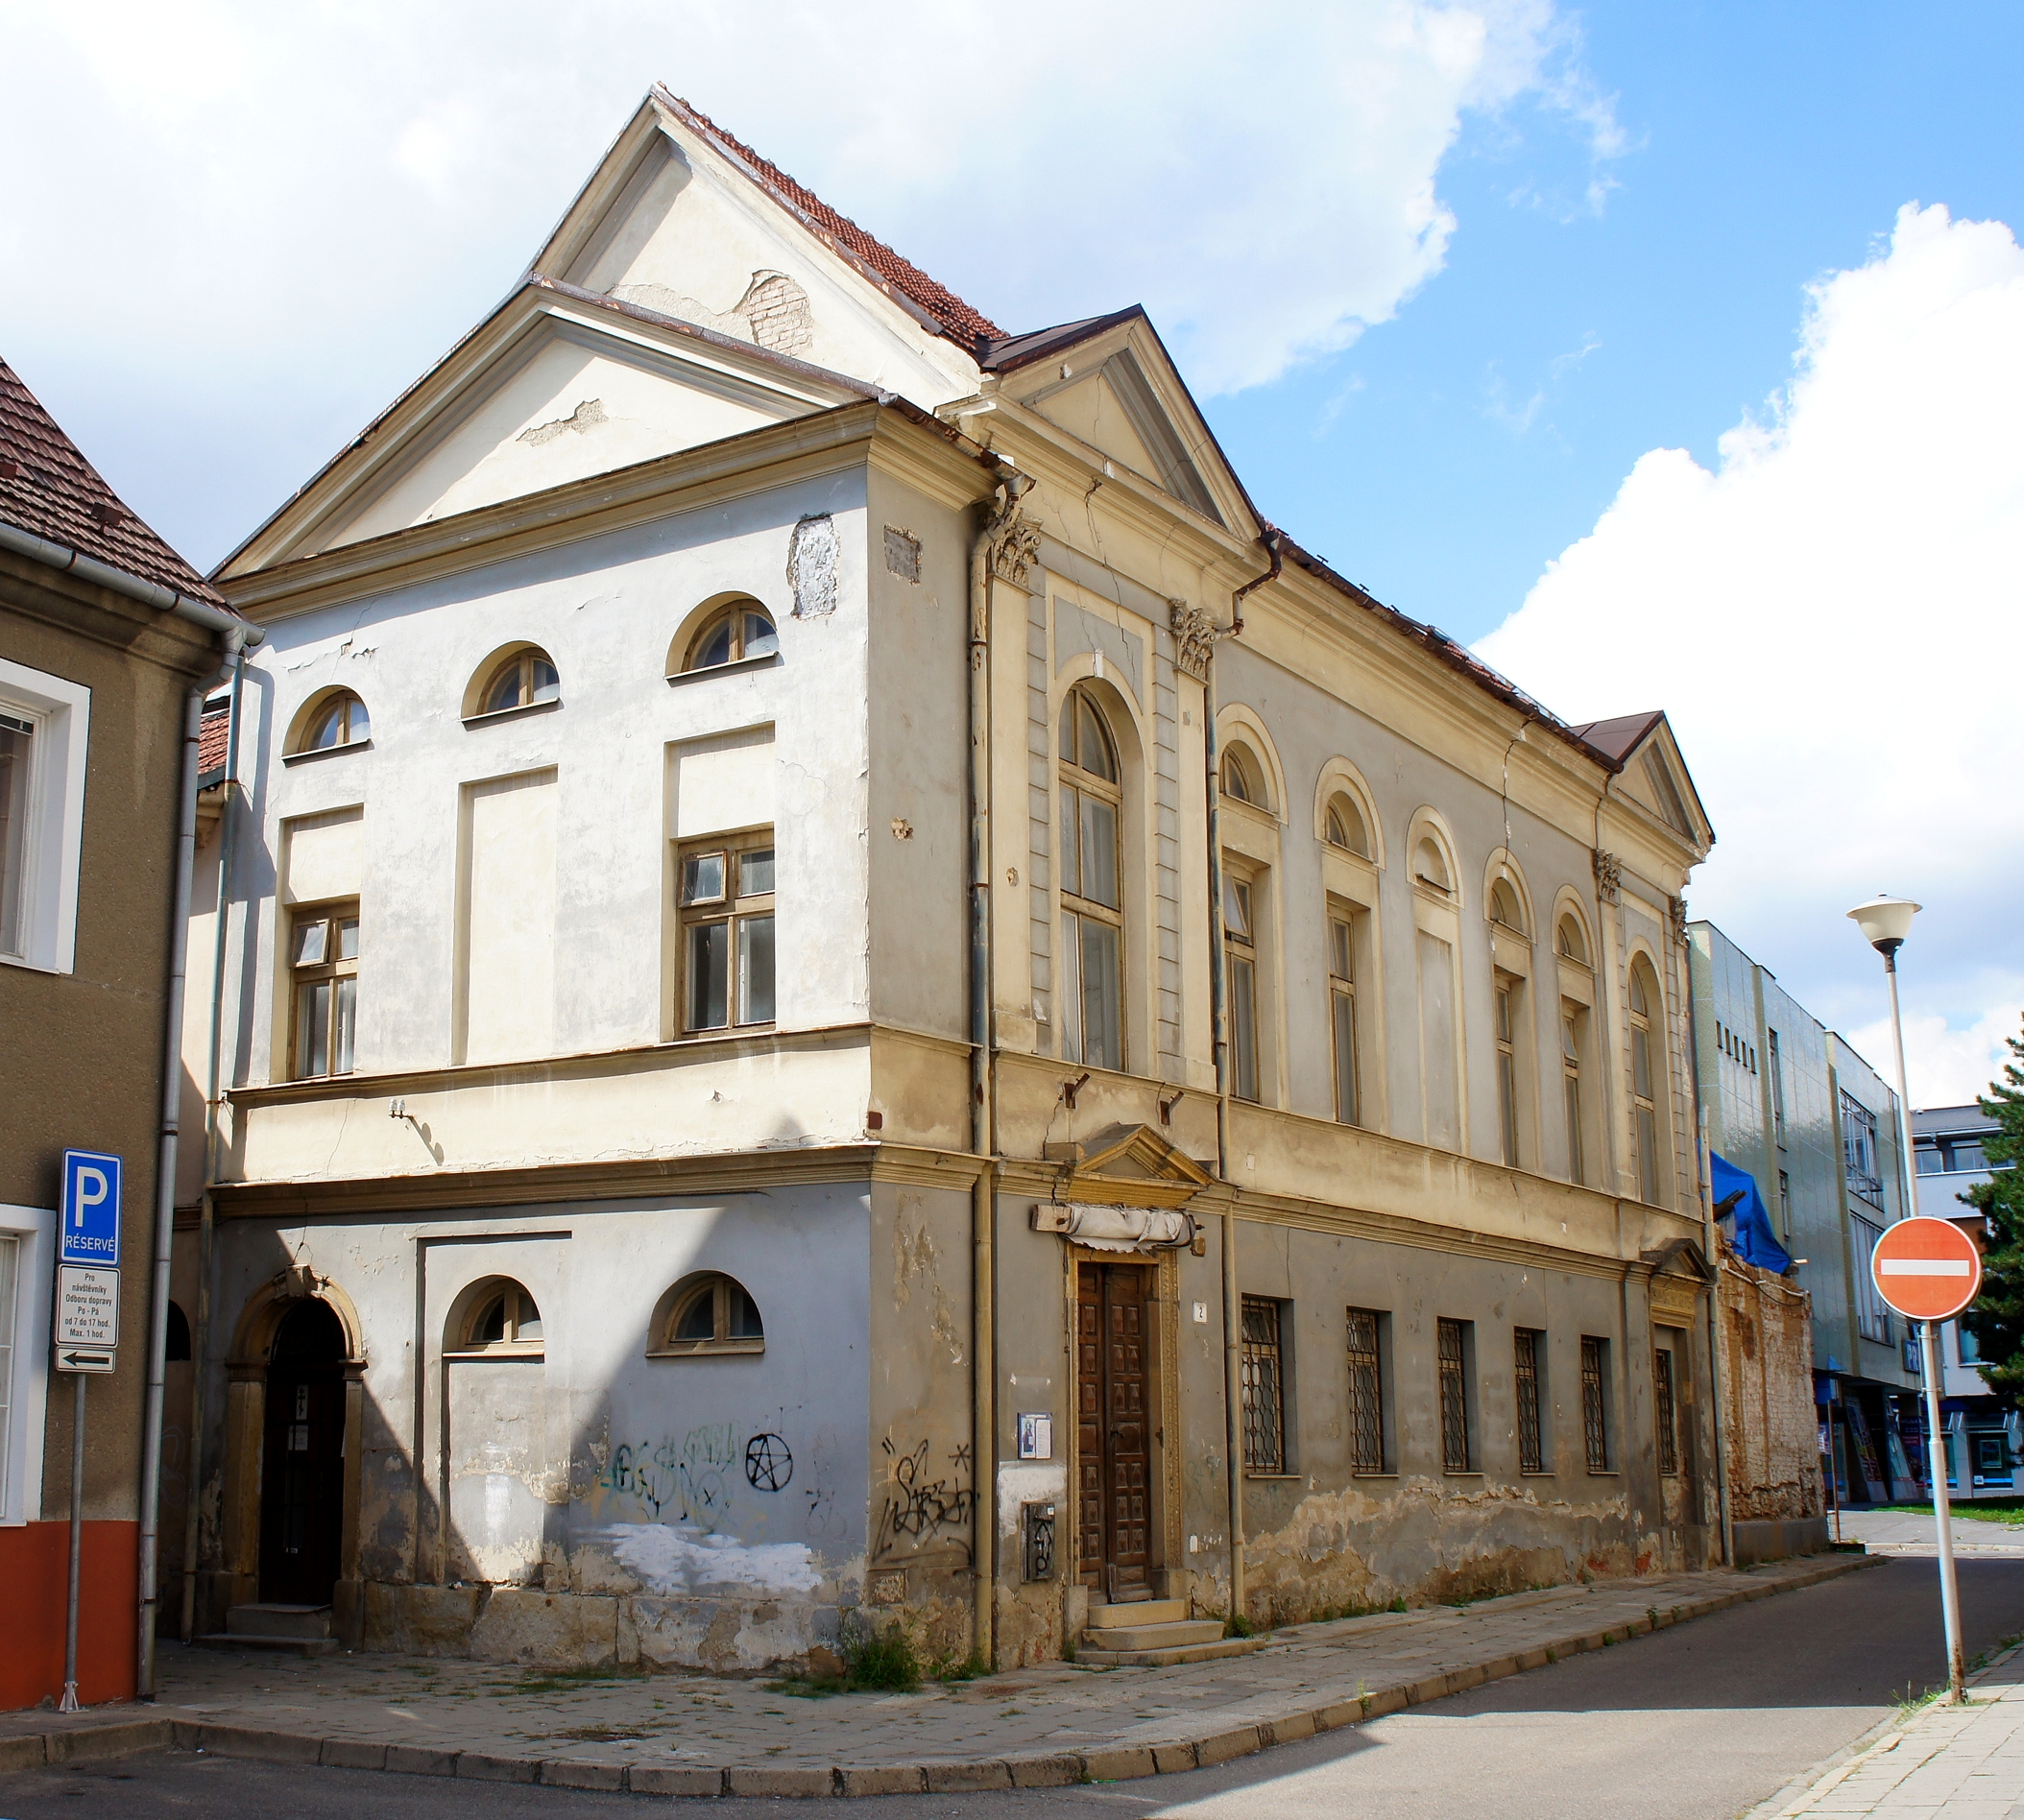 Eladó egy majdnem 200 éves cseh zsinagóga